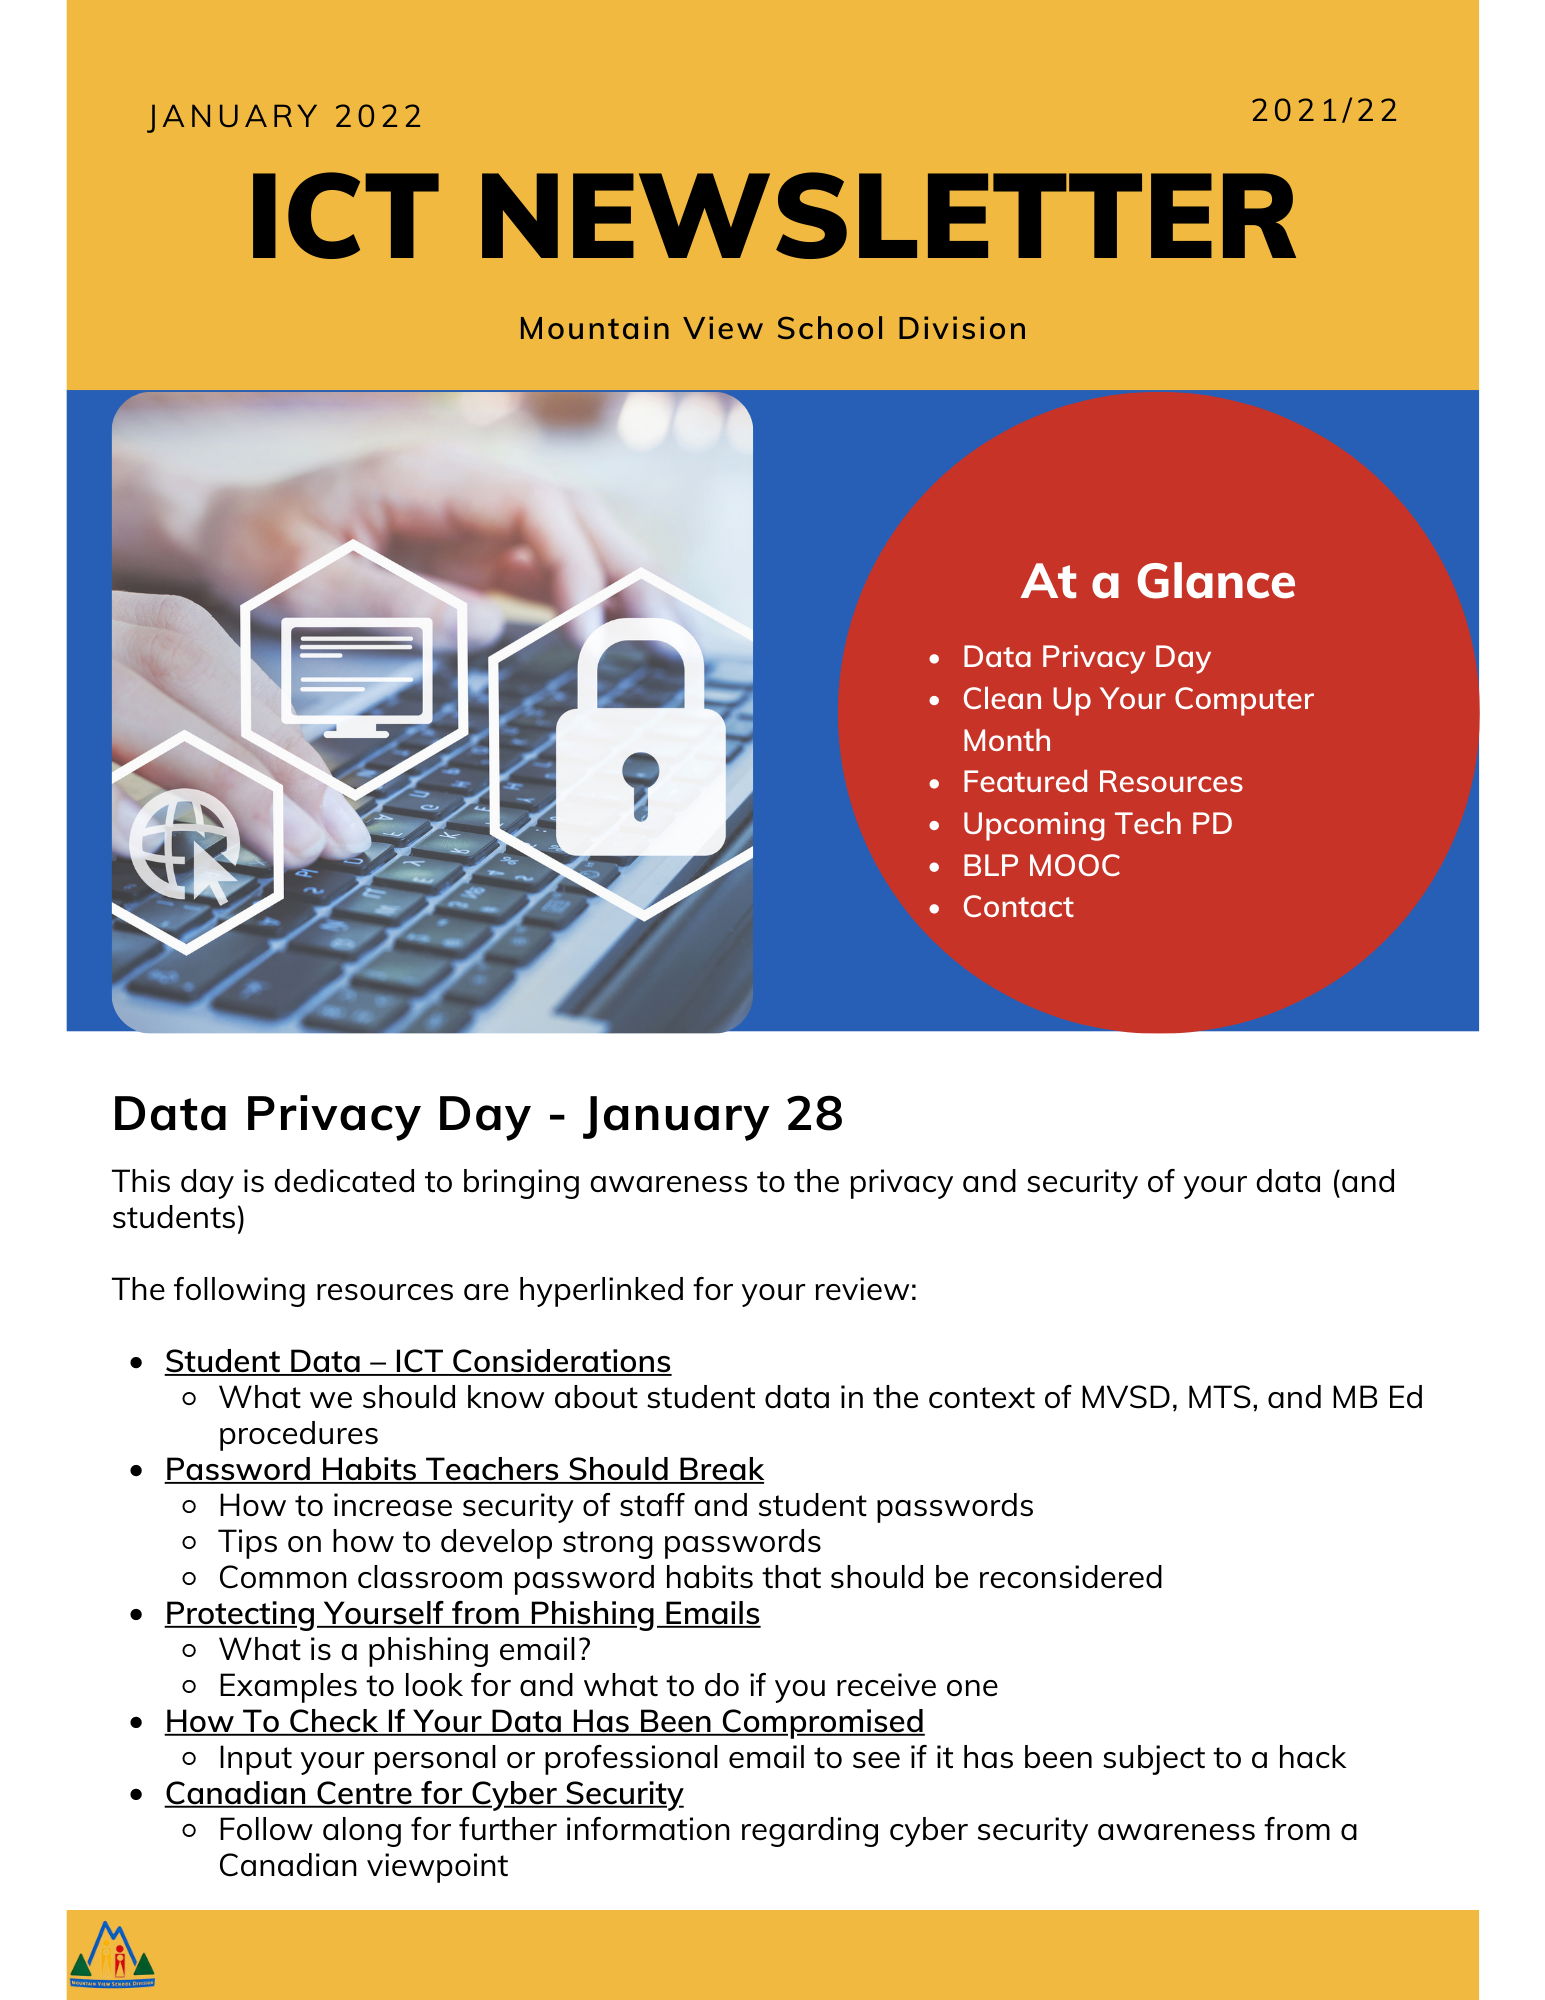 January ICT Newsletter